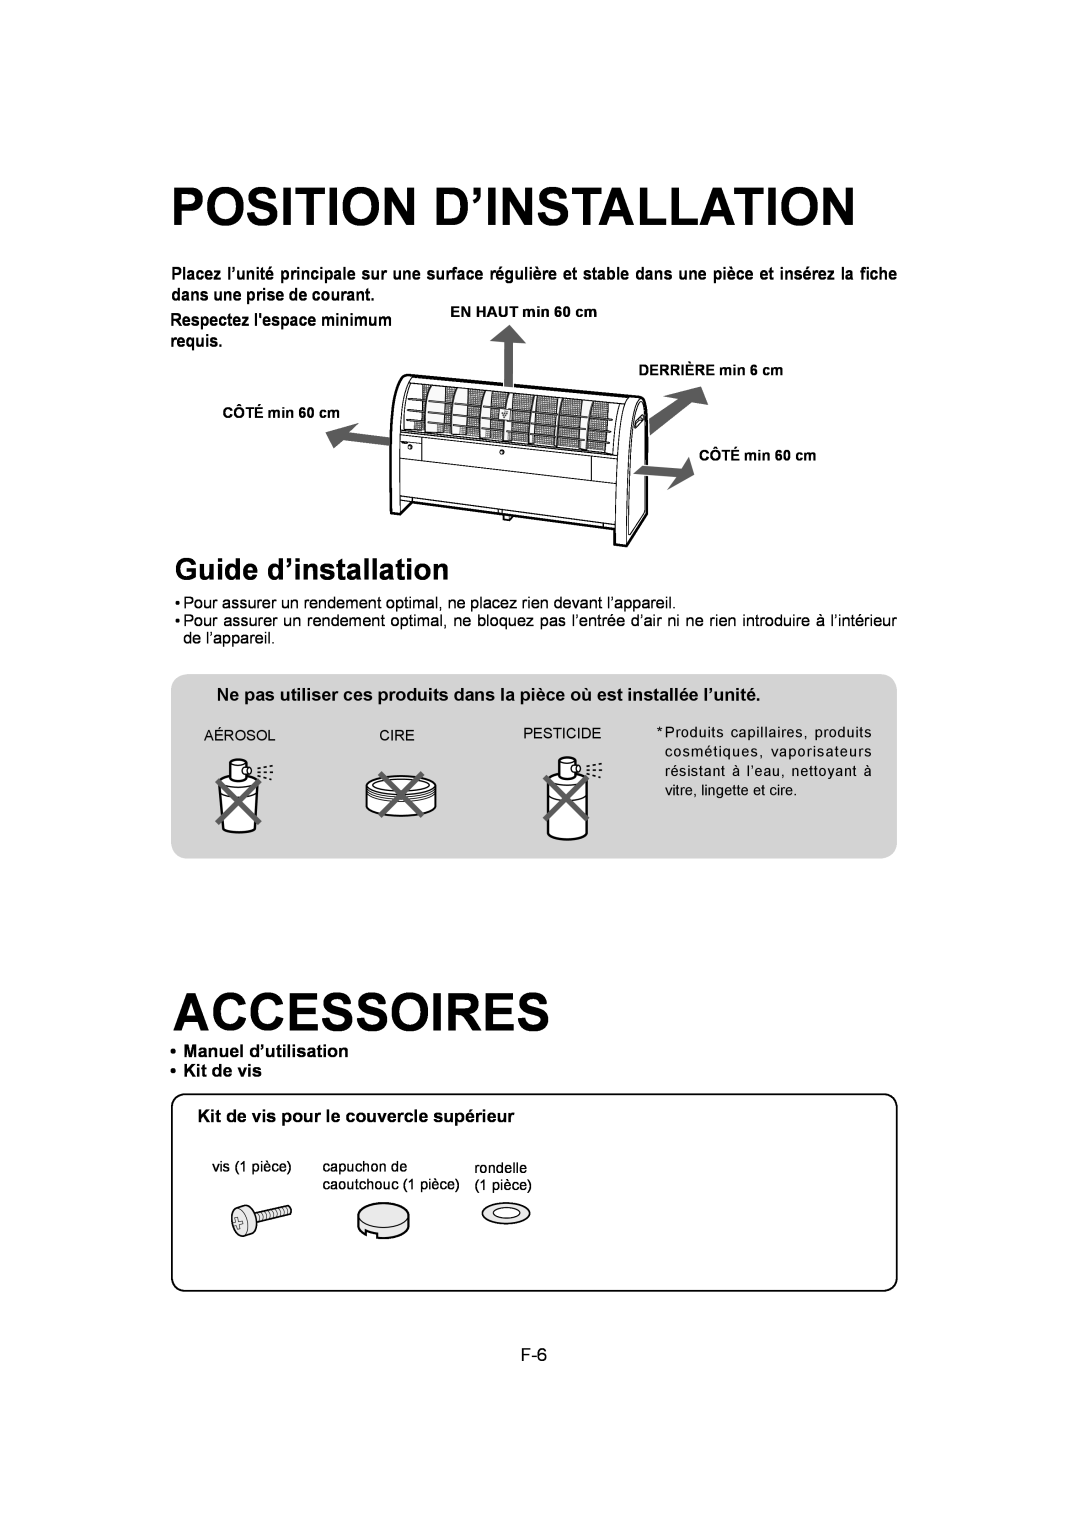 Sharp IG-A40U operation manual Position D’Installation, Accessoires, Guide d’installation, Respectez lespace minimum requis 